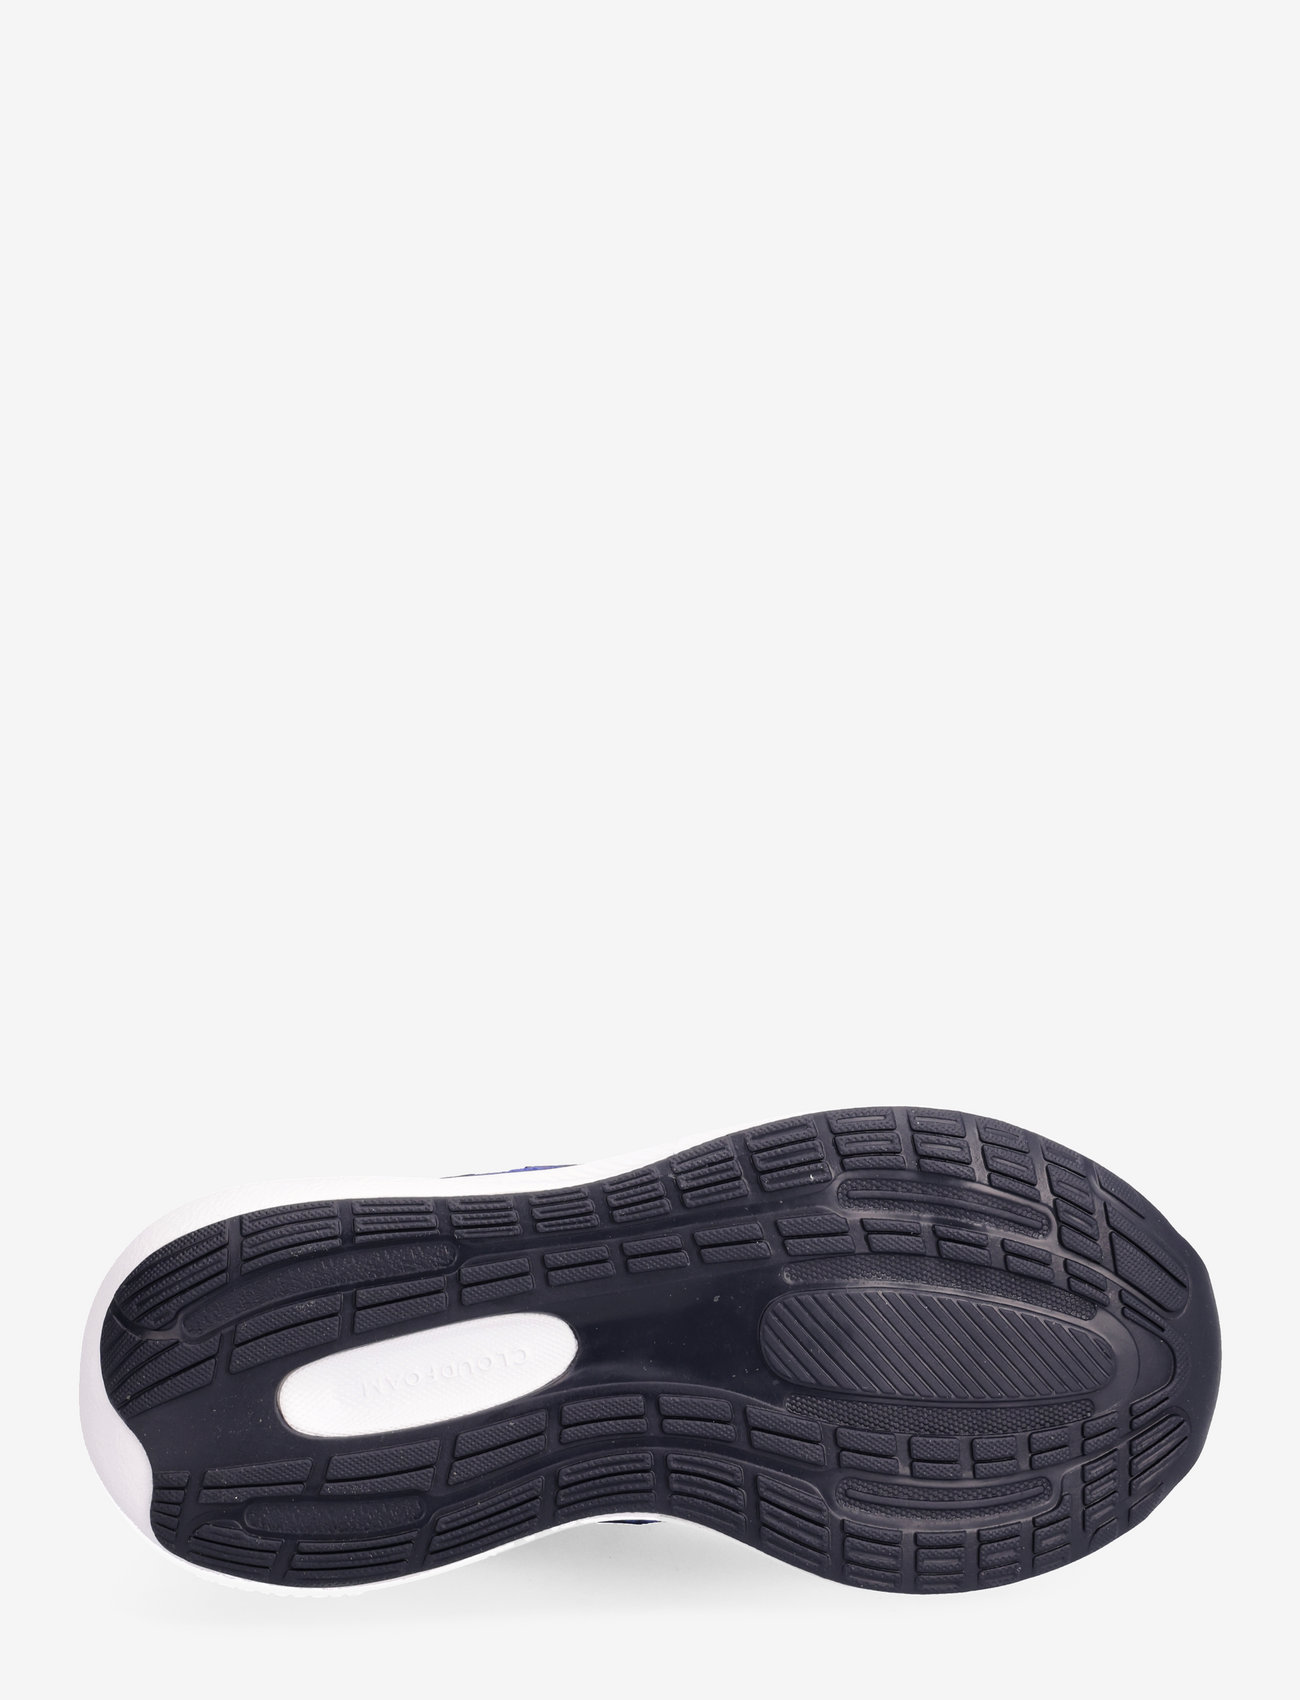 Lucblu/legink/ftwwht) - adidas Performance Runfalcon 3.0 Elastic Lace Top  Strap Shoes - 5.616,75 kr